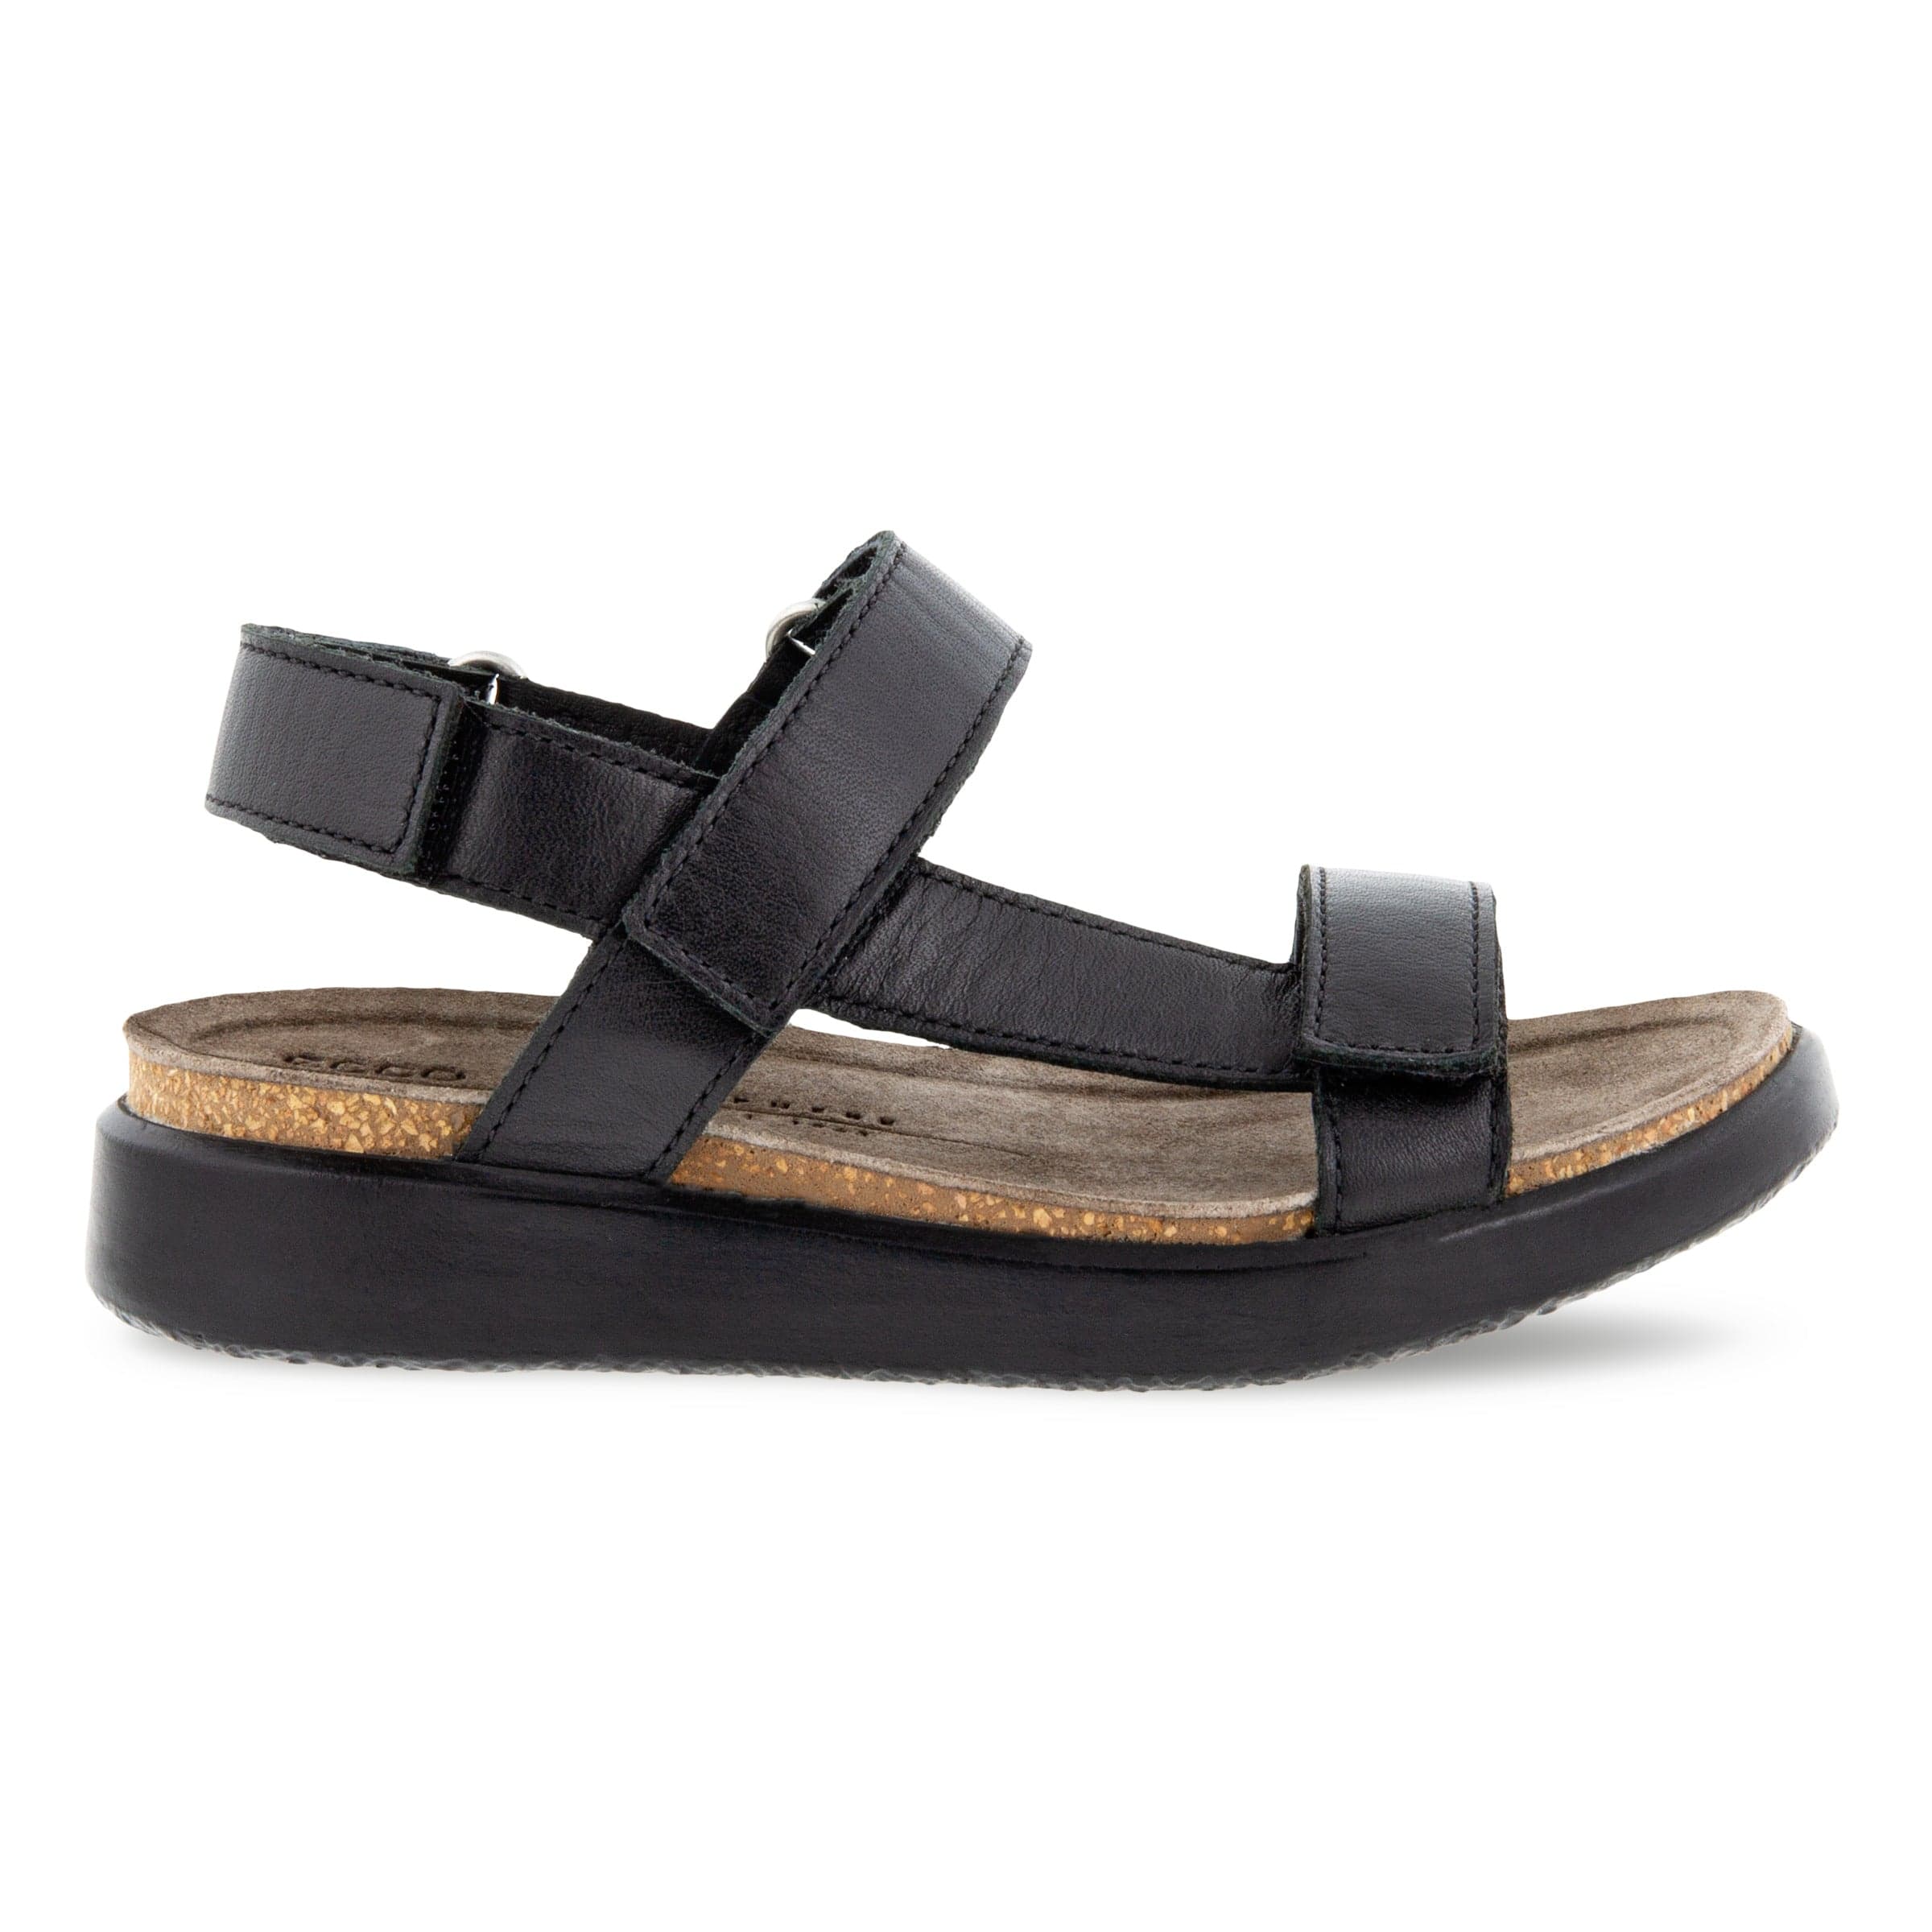 - FLOWT K sandal i sort - 705703